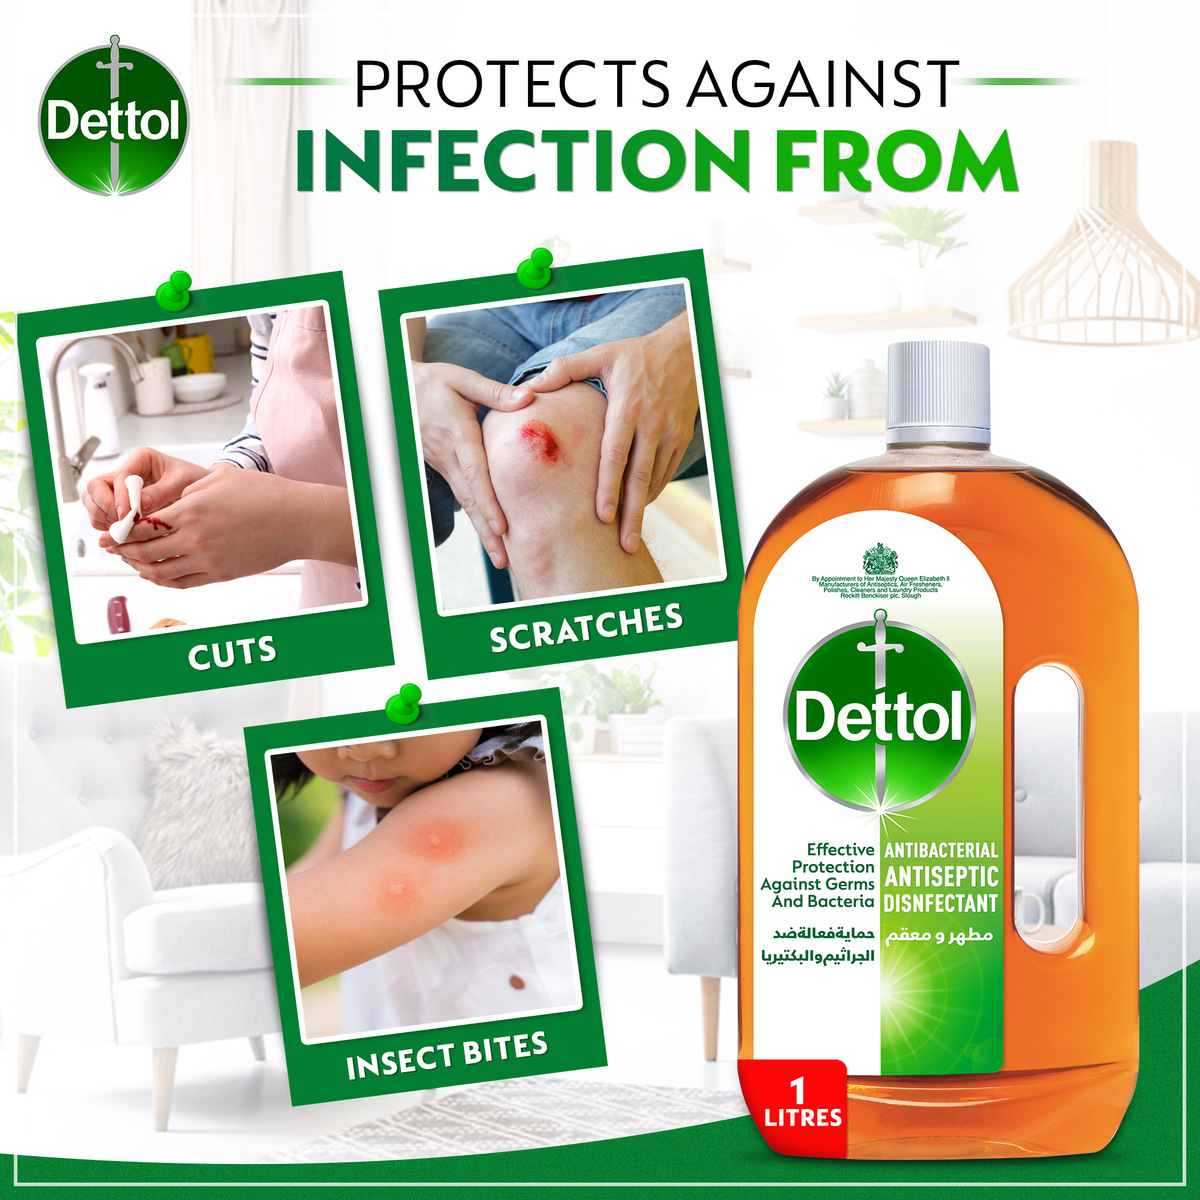 Dettol Antiseptic Antibacterial Disinfectant Liquid 1 Litre